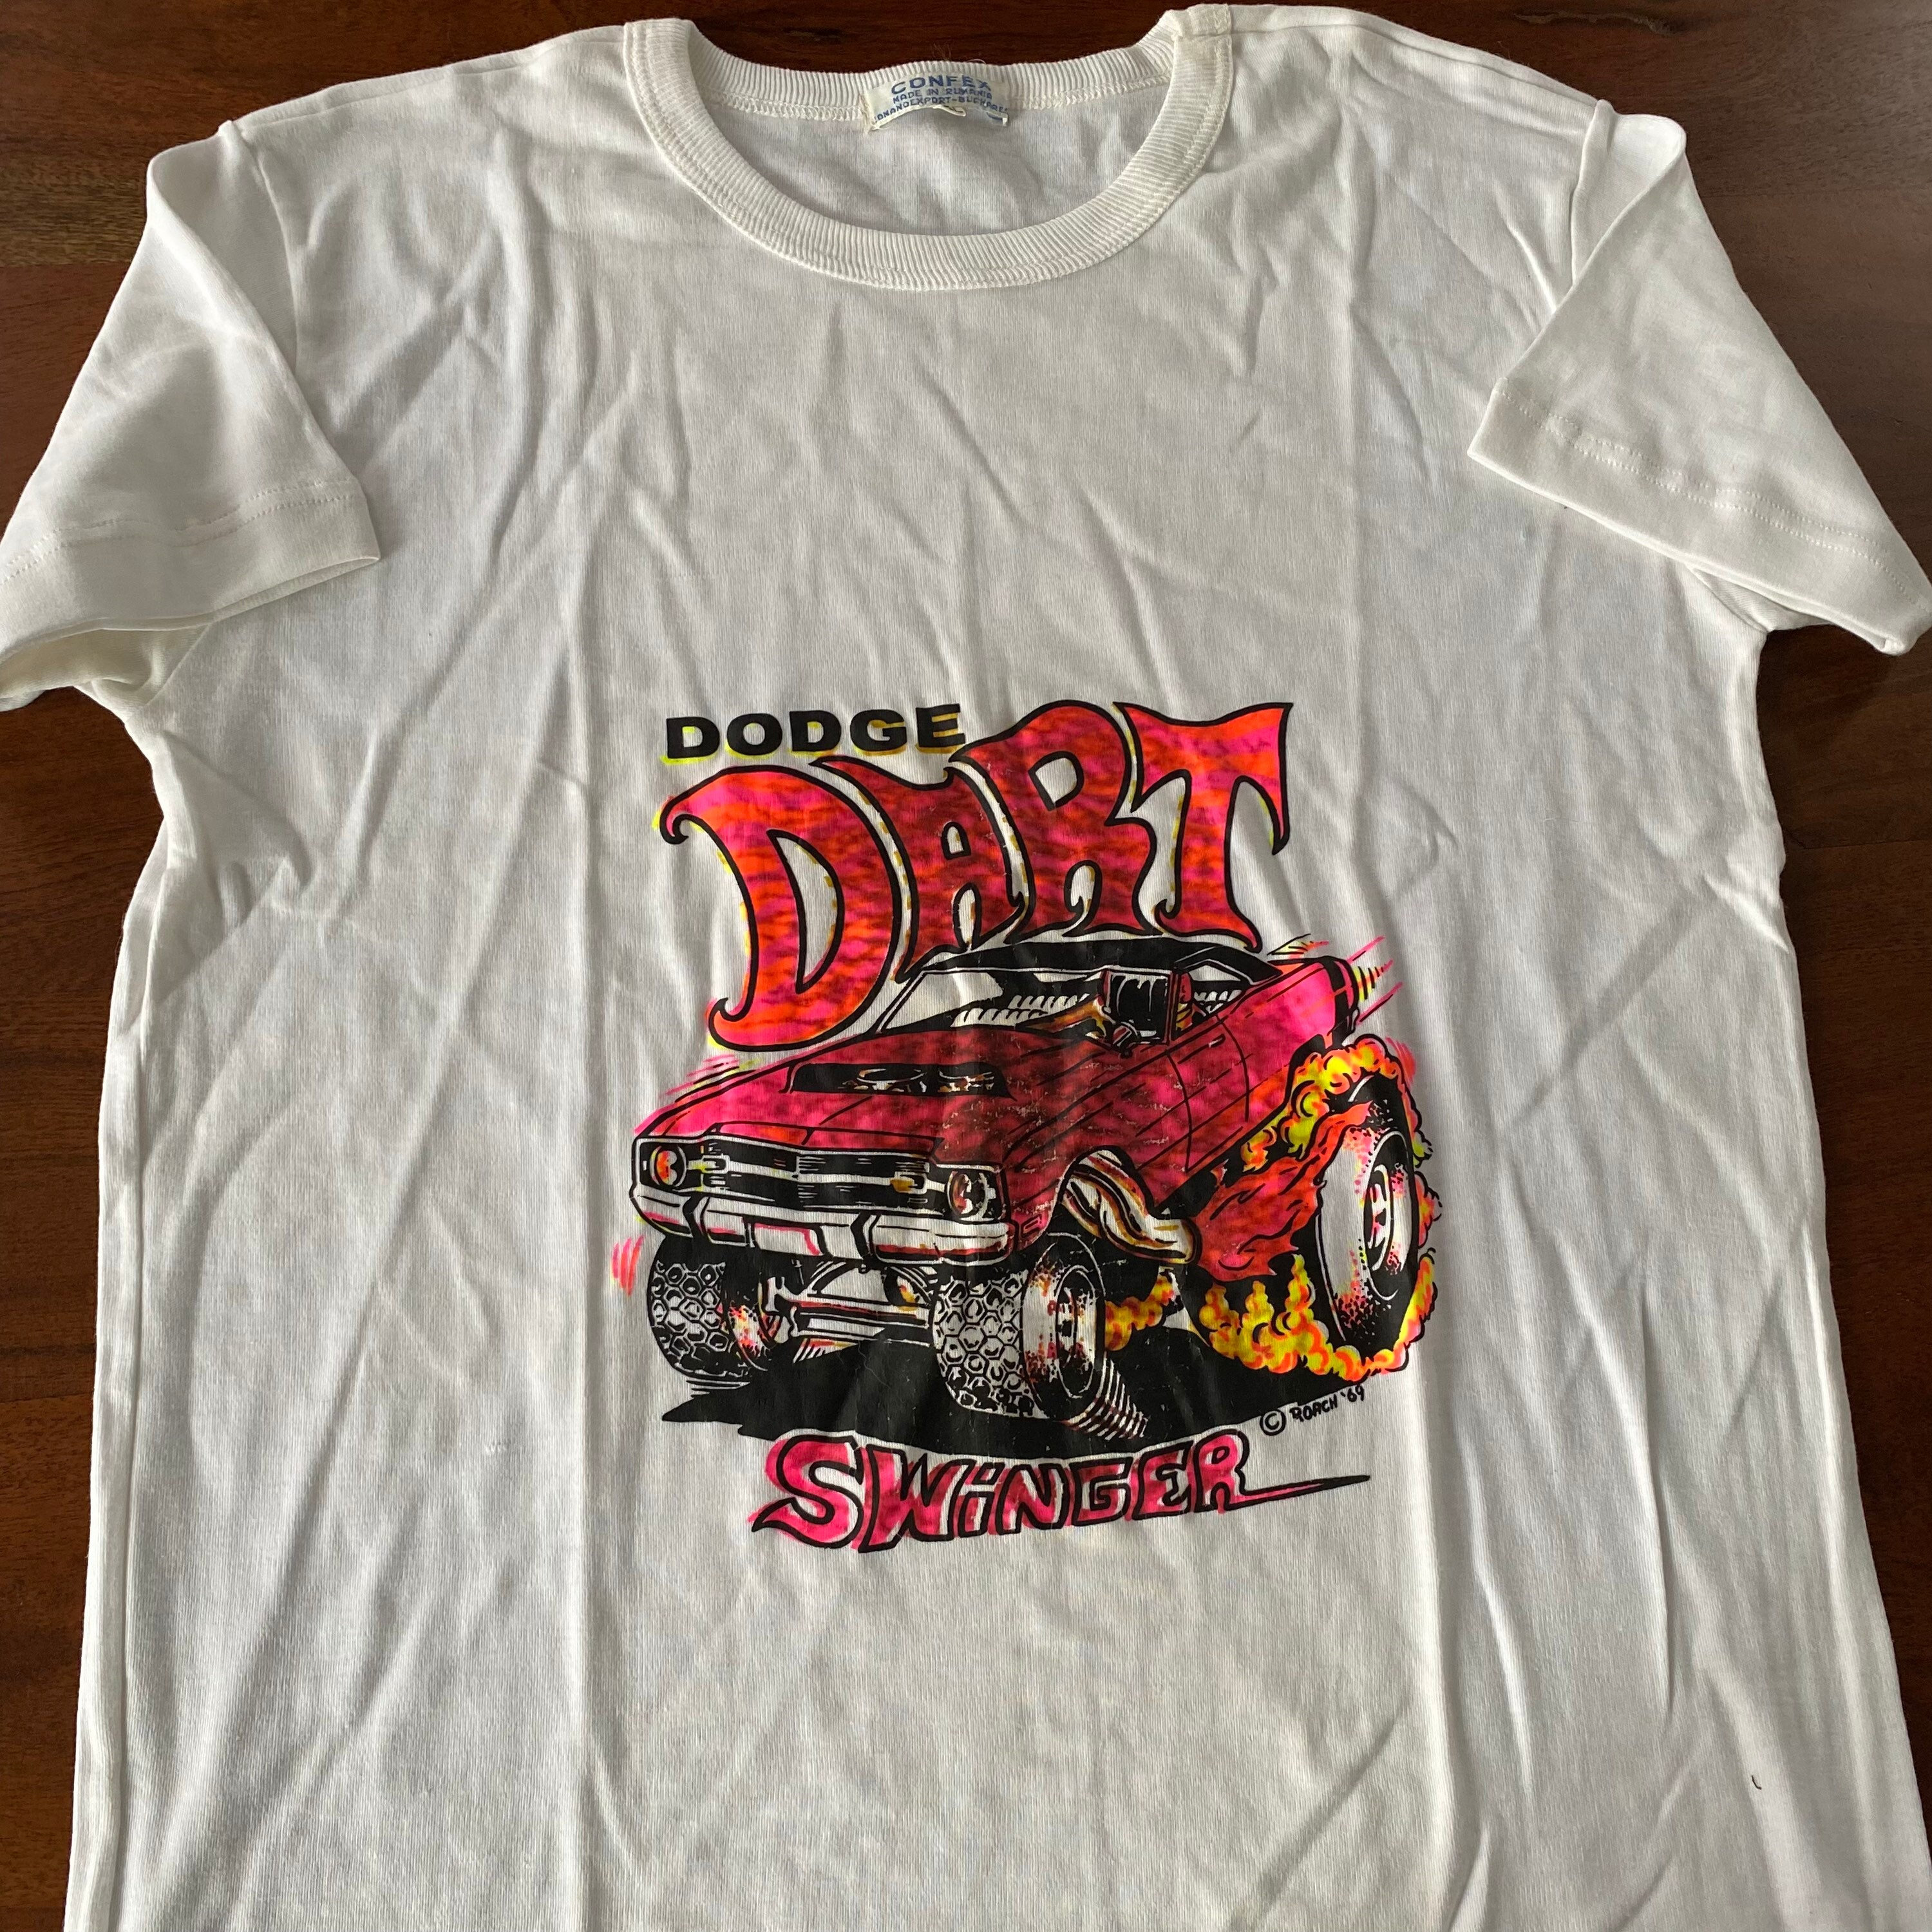 Vintage Dodge Dart swinger Graphic T-shirt image